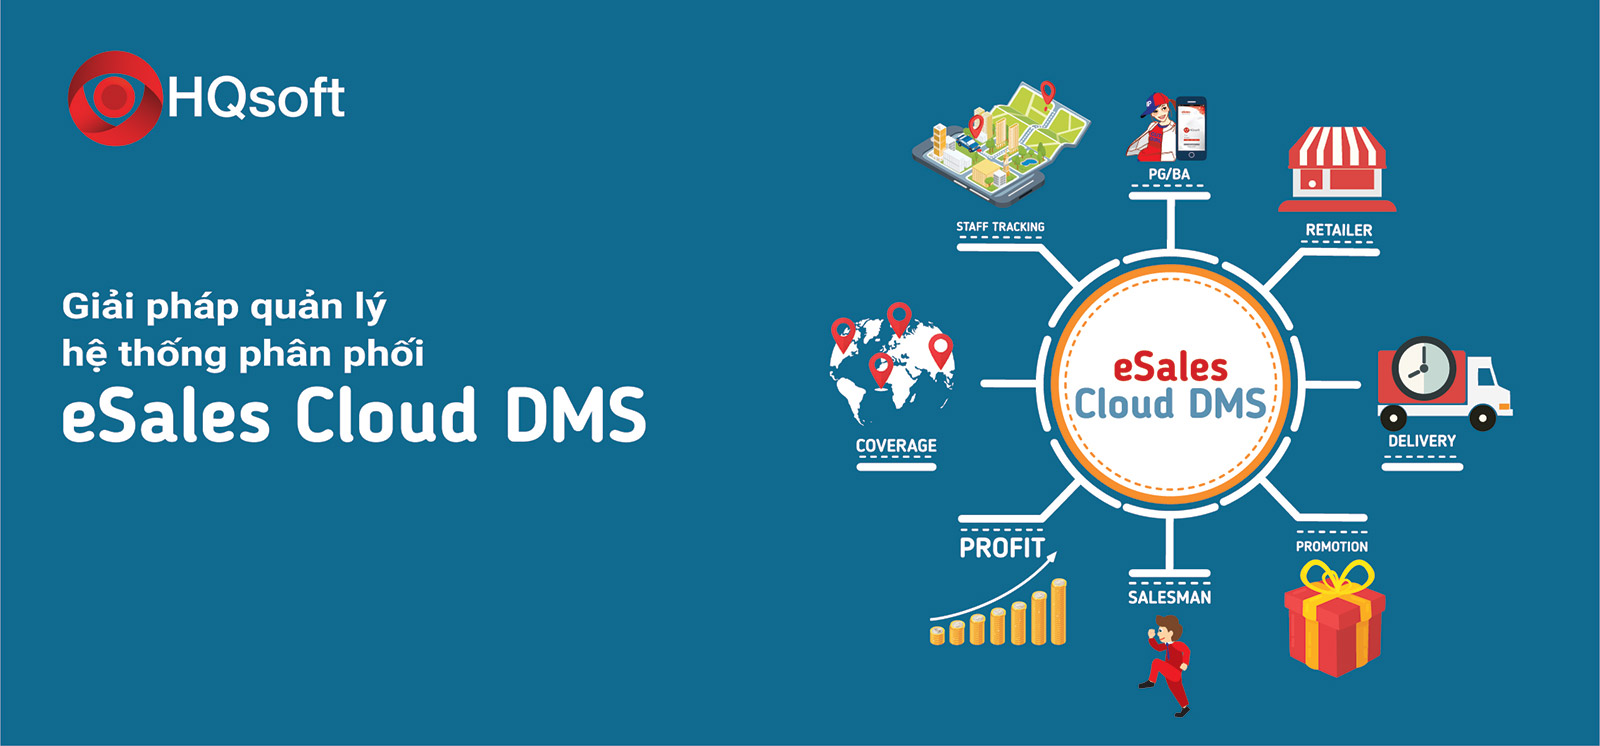 Giải pháp DMS với phần mềm eSales Cloud DMS giúp Doanh nghiệp tối ưu hệ thống phân phối, giám sát hoạt động kinh doanh nhanh chóng, dễ dàng.